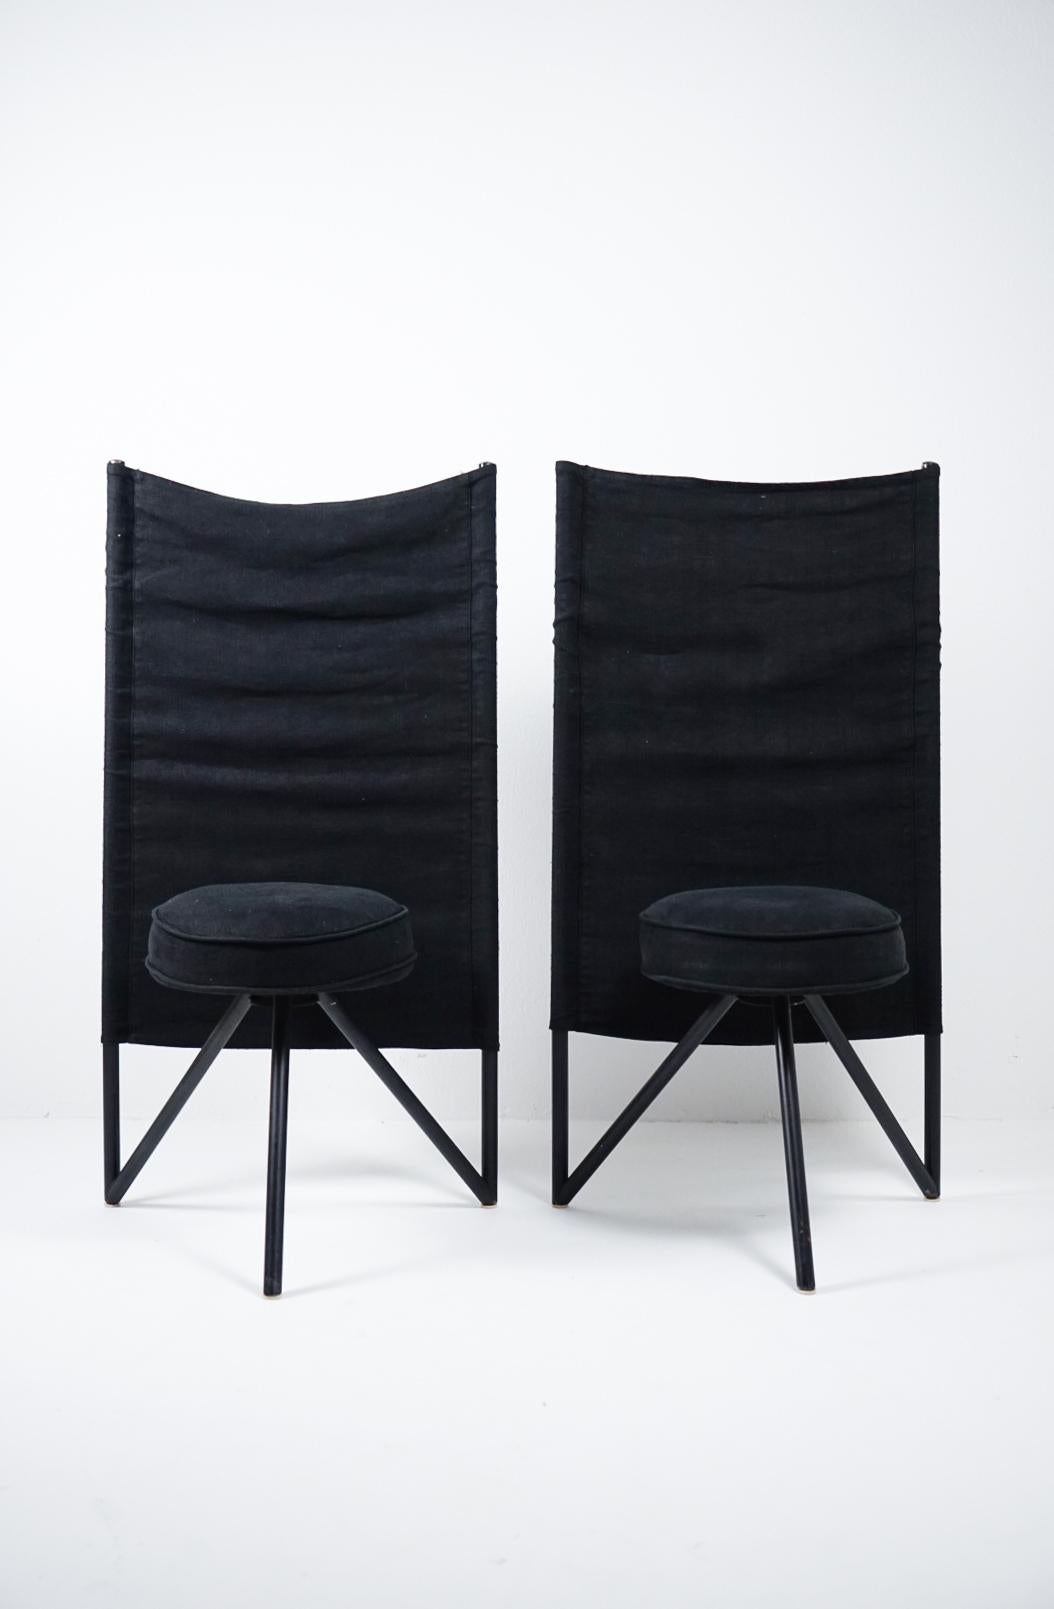 Rare paire de chaises post-moderne Miss Wirt de Philippe Starck pour Disform en lin noir d'origine. Miss Wirt tripode, chaises à trois pieds produites en Espagne 1982/198 par Disform. Le tissu de lin en coton noir est tendu sur deux tubes d'acier